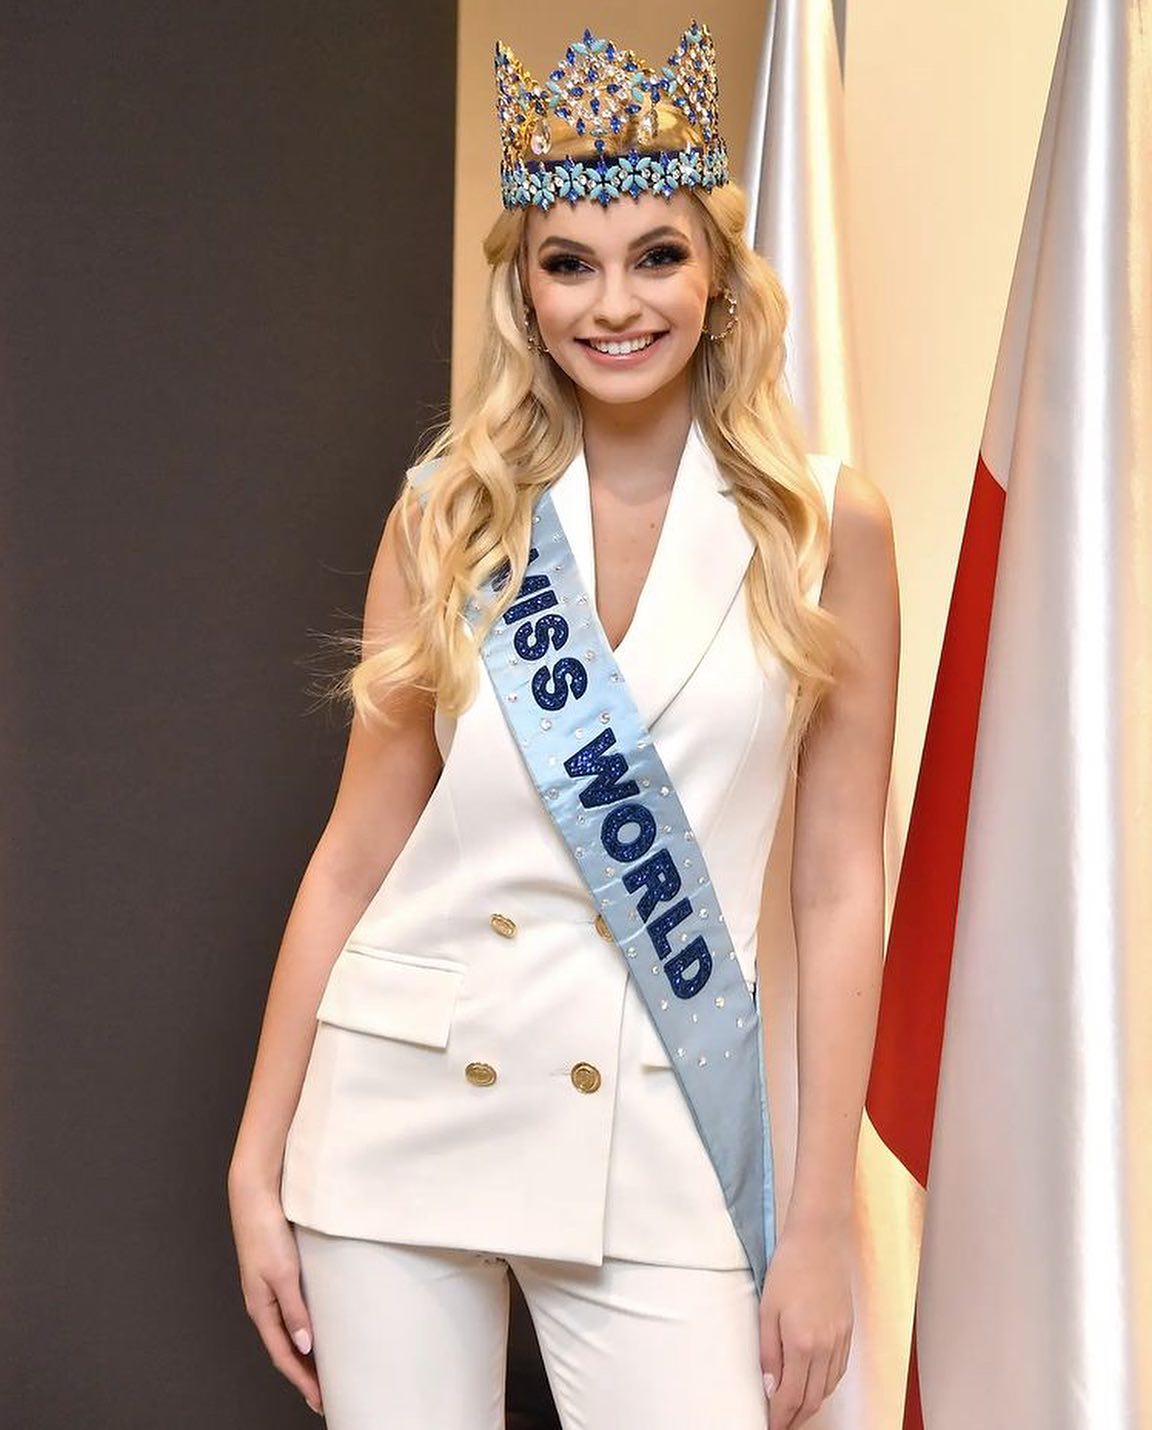 karolina bielawska, miss world 2021. - Página 6 27434312